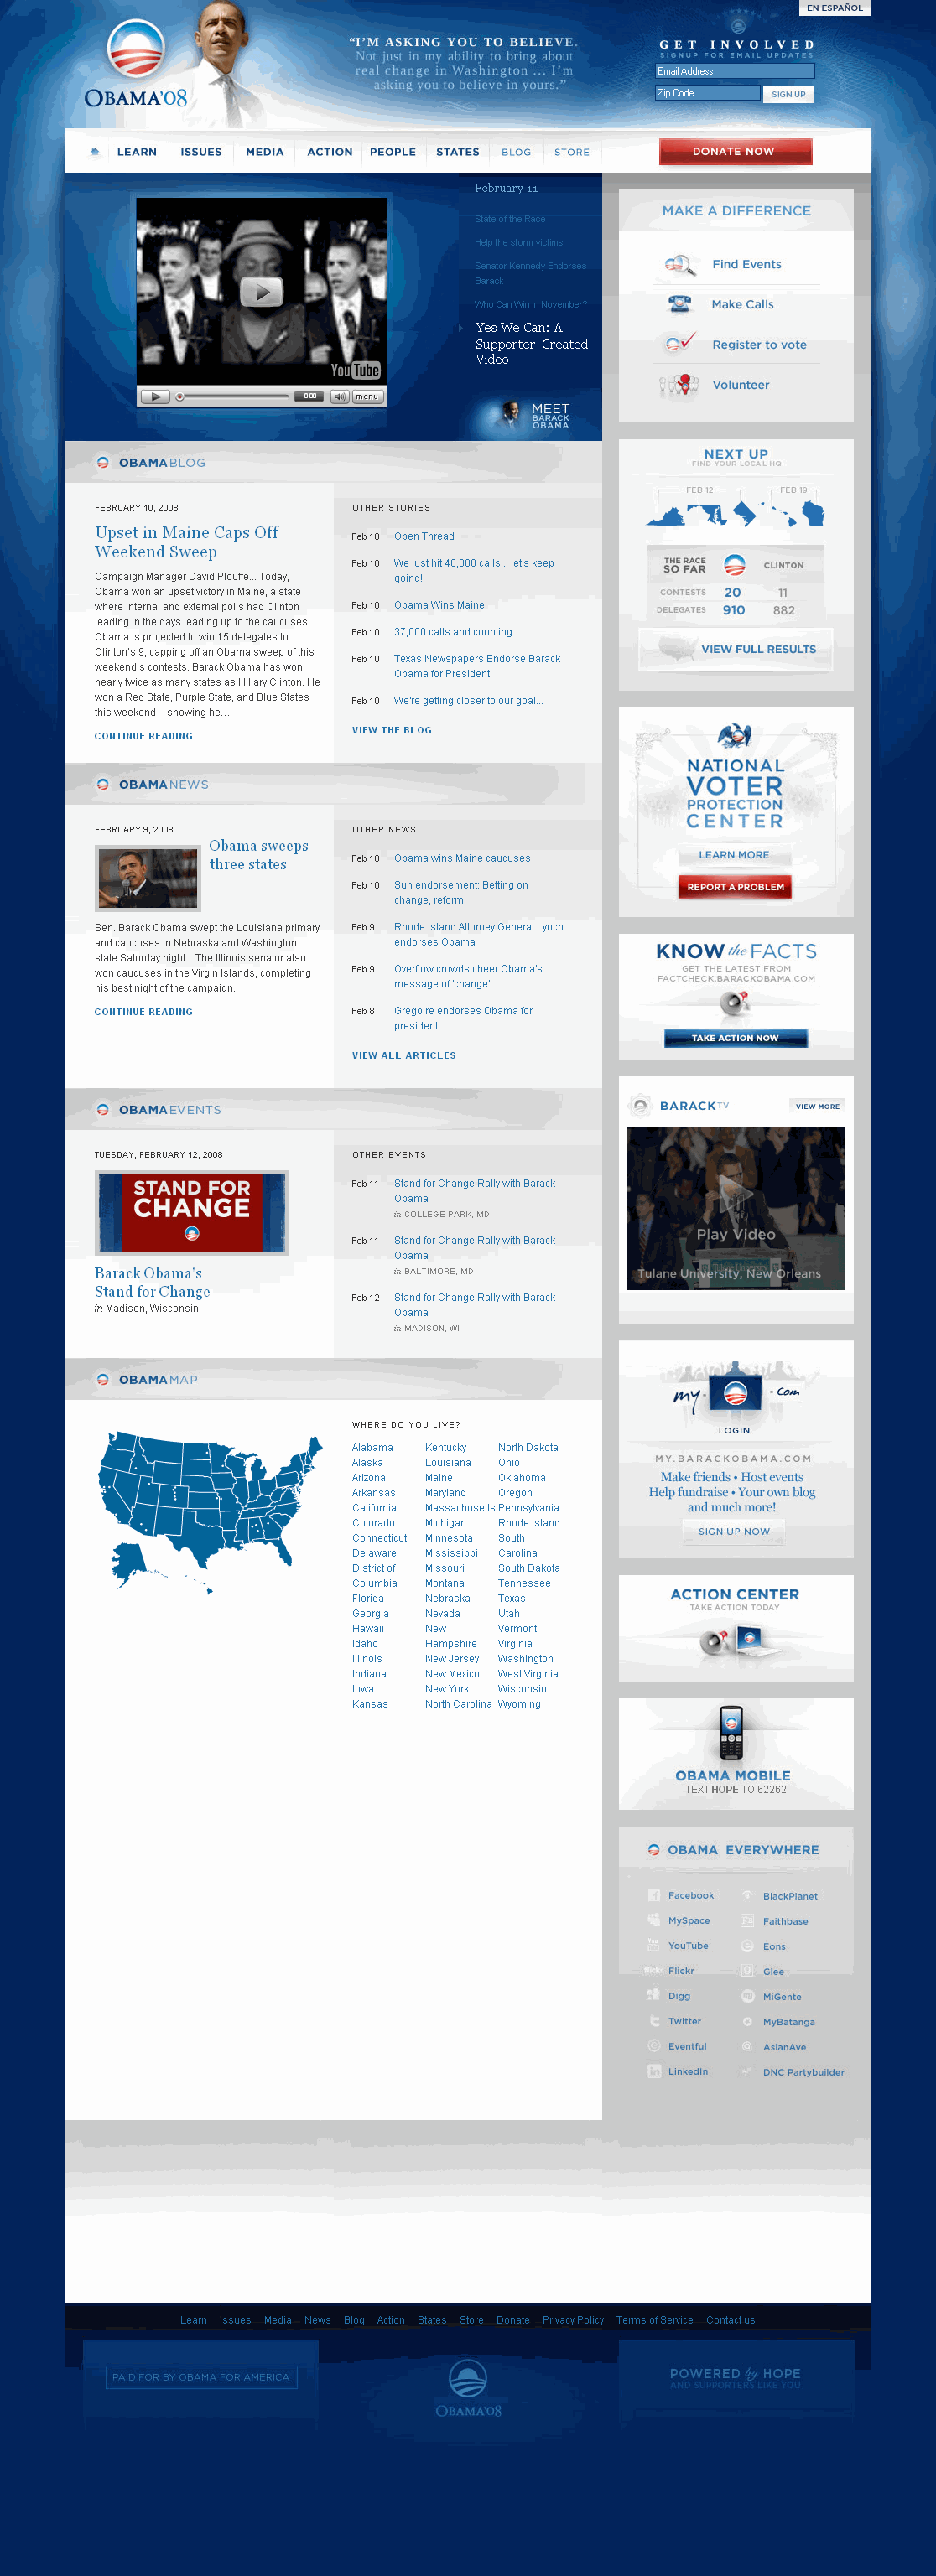 Barack Obama Website Home Page